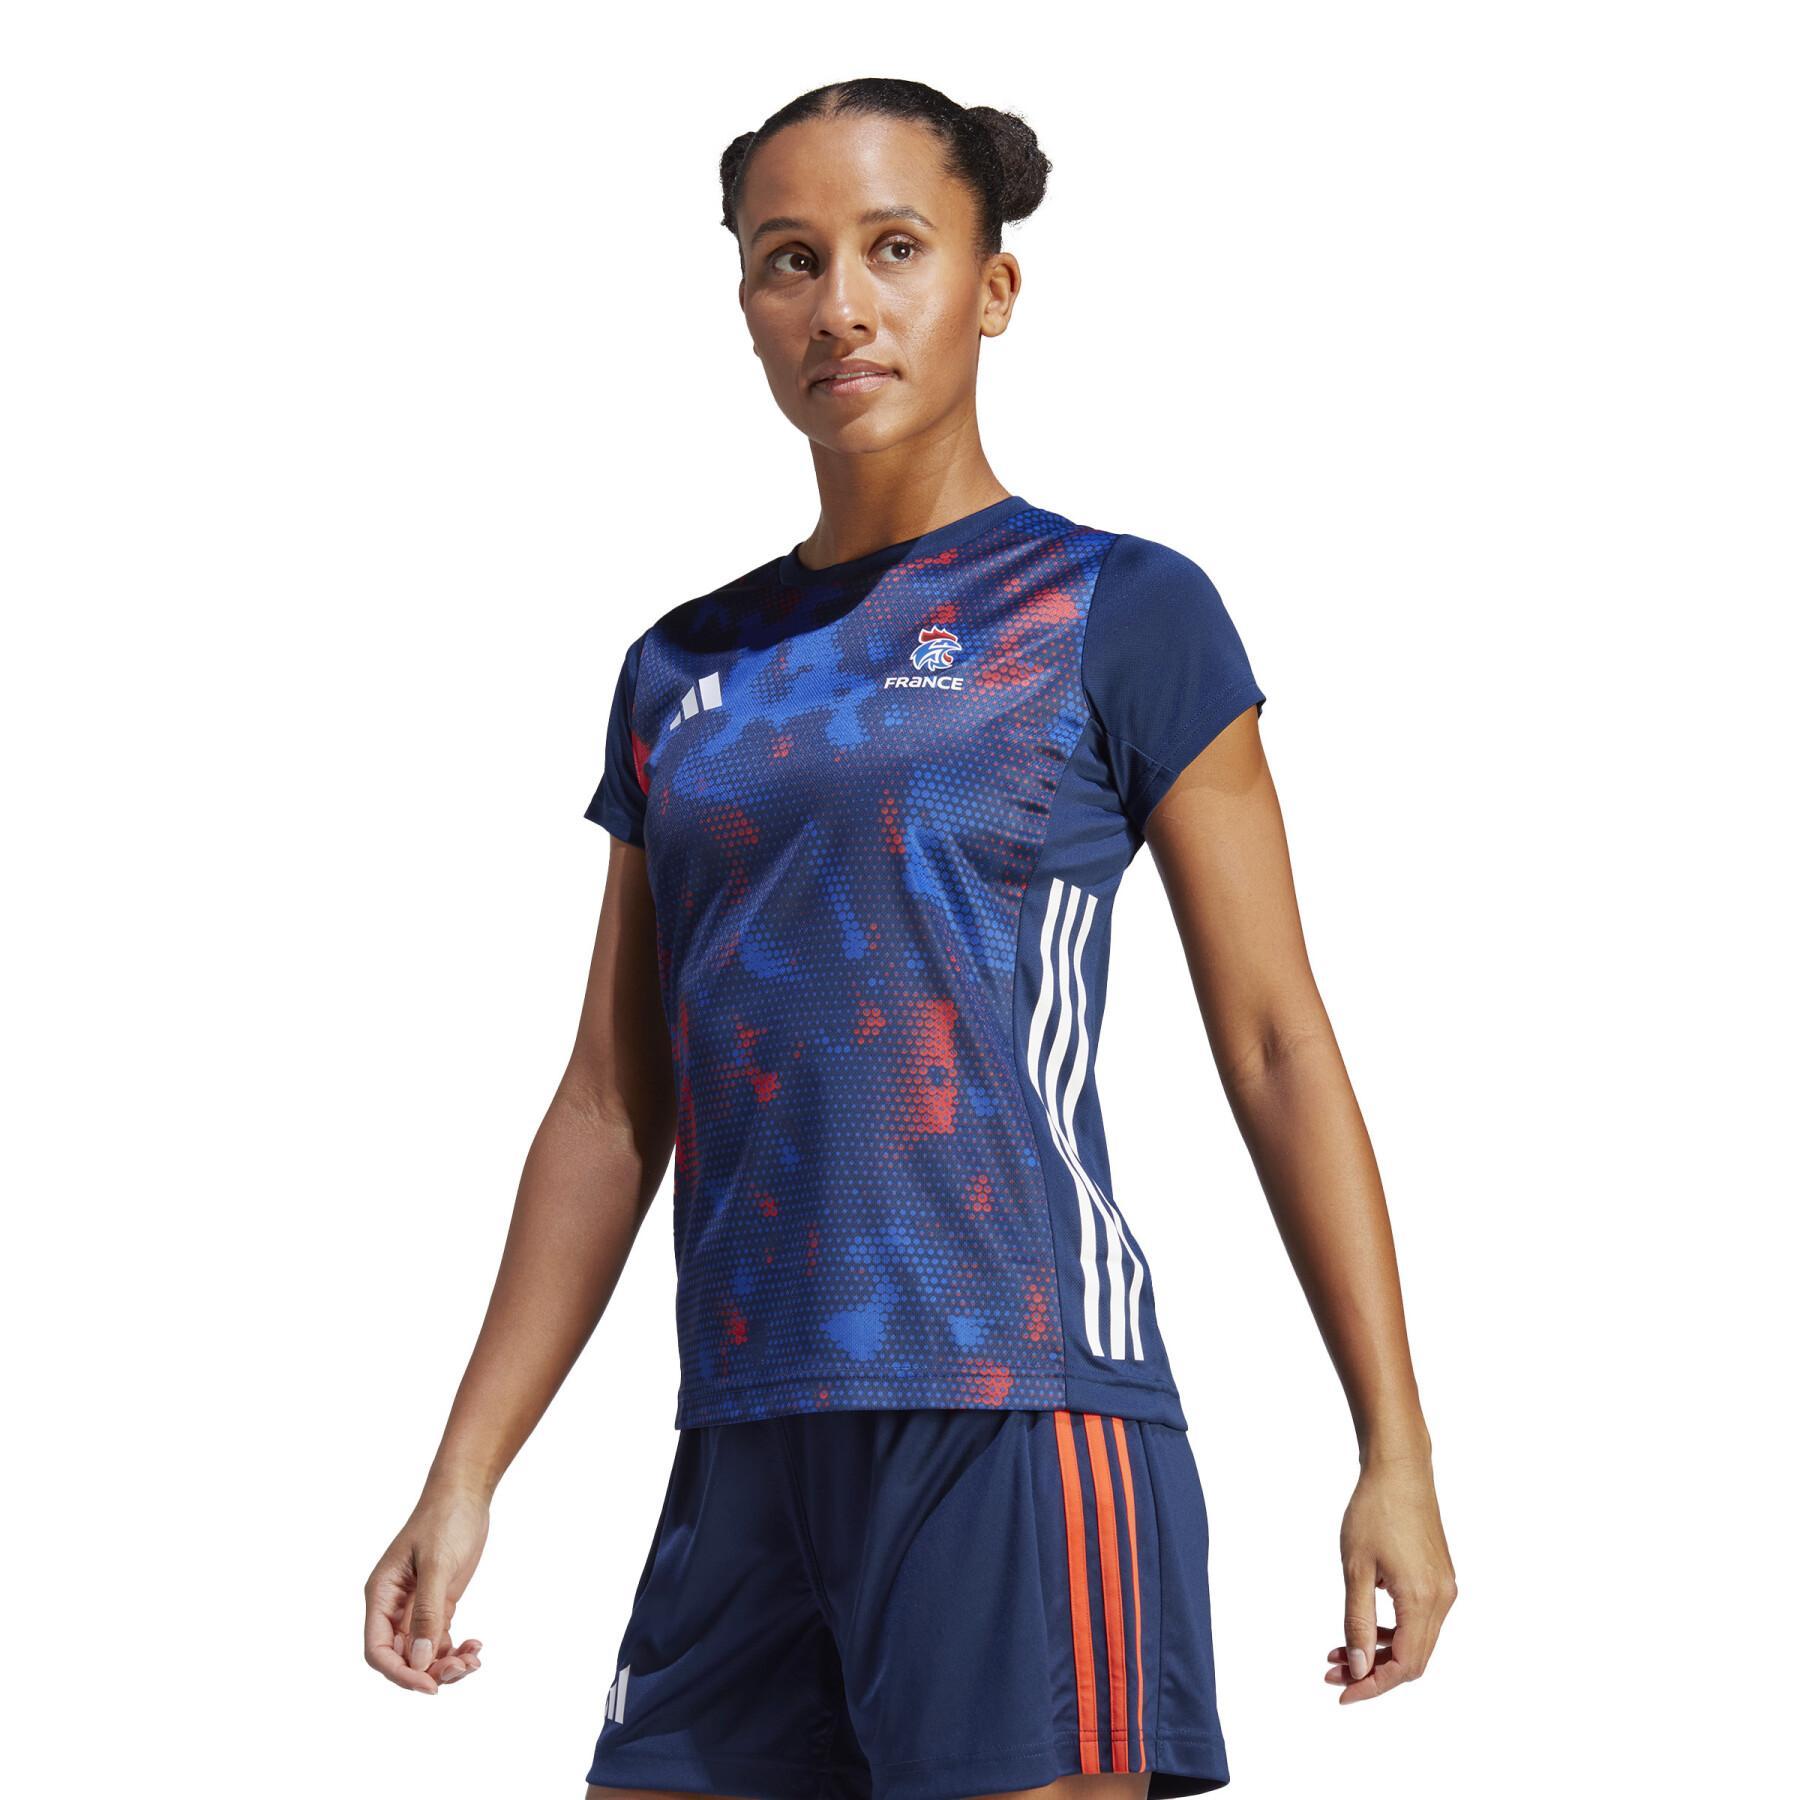 Officiell träningströja för damer från det franska landslaget France 2023/24